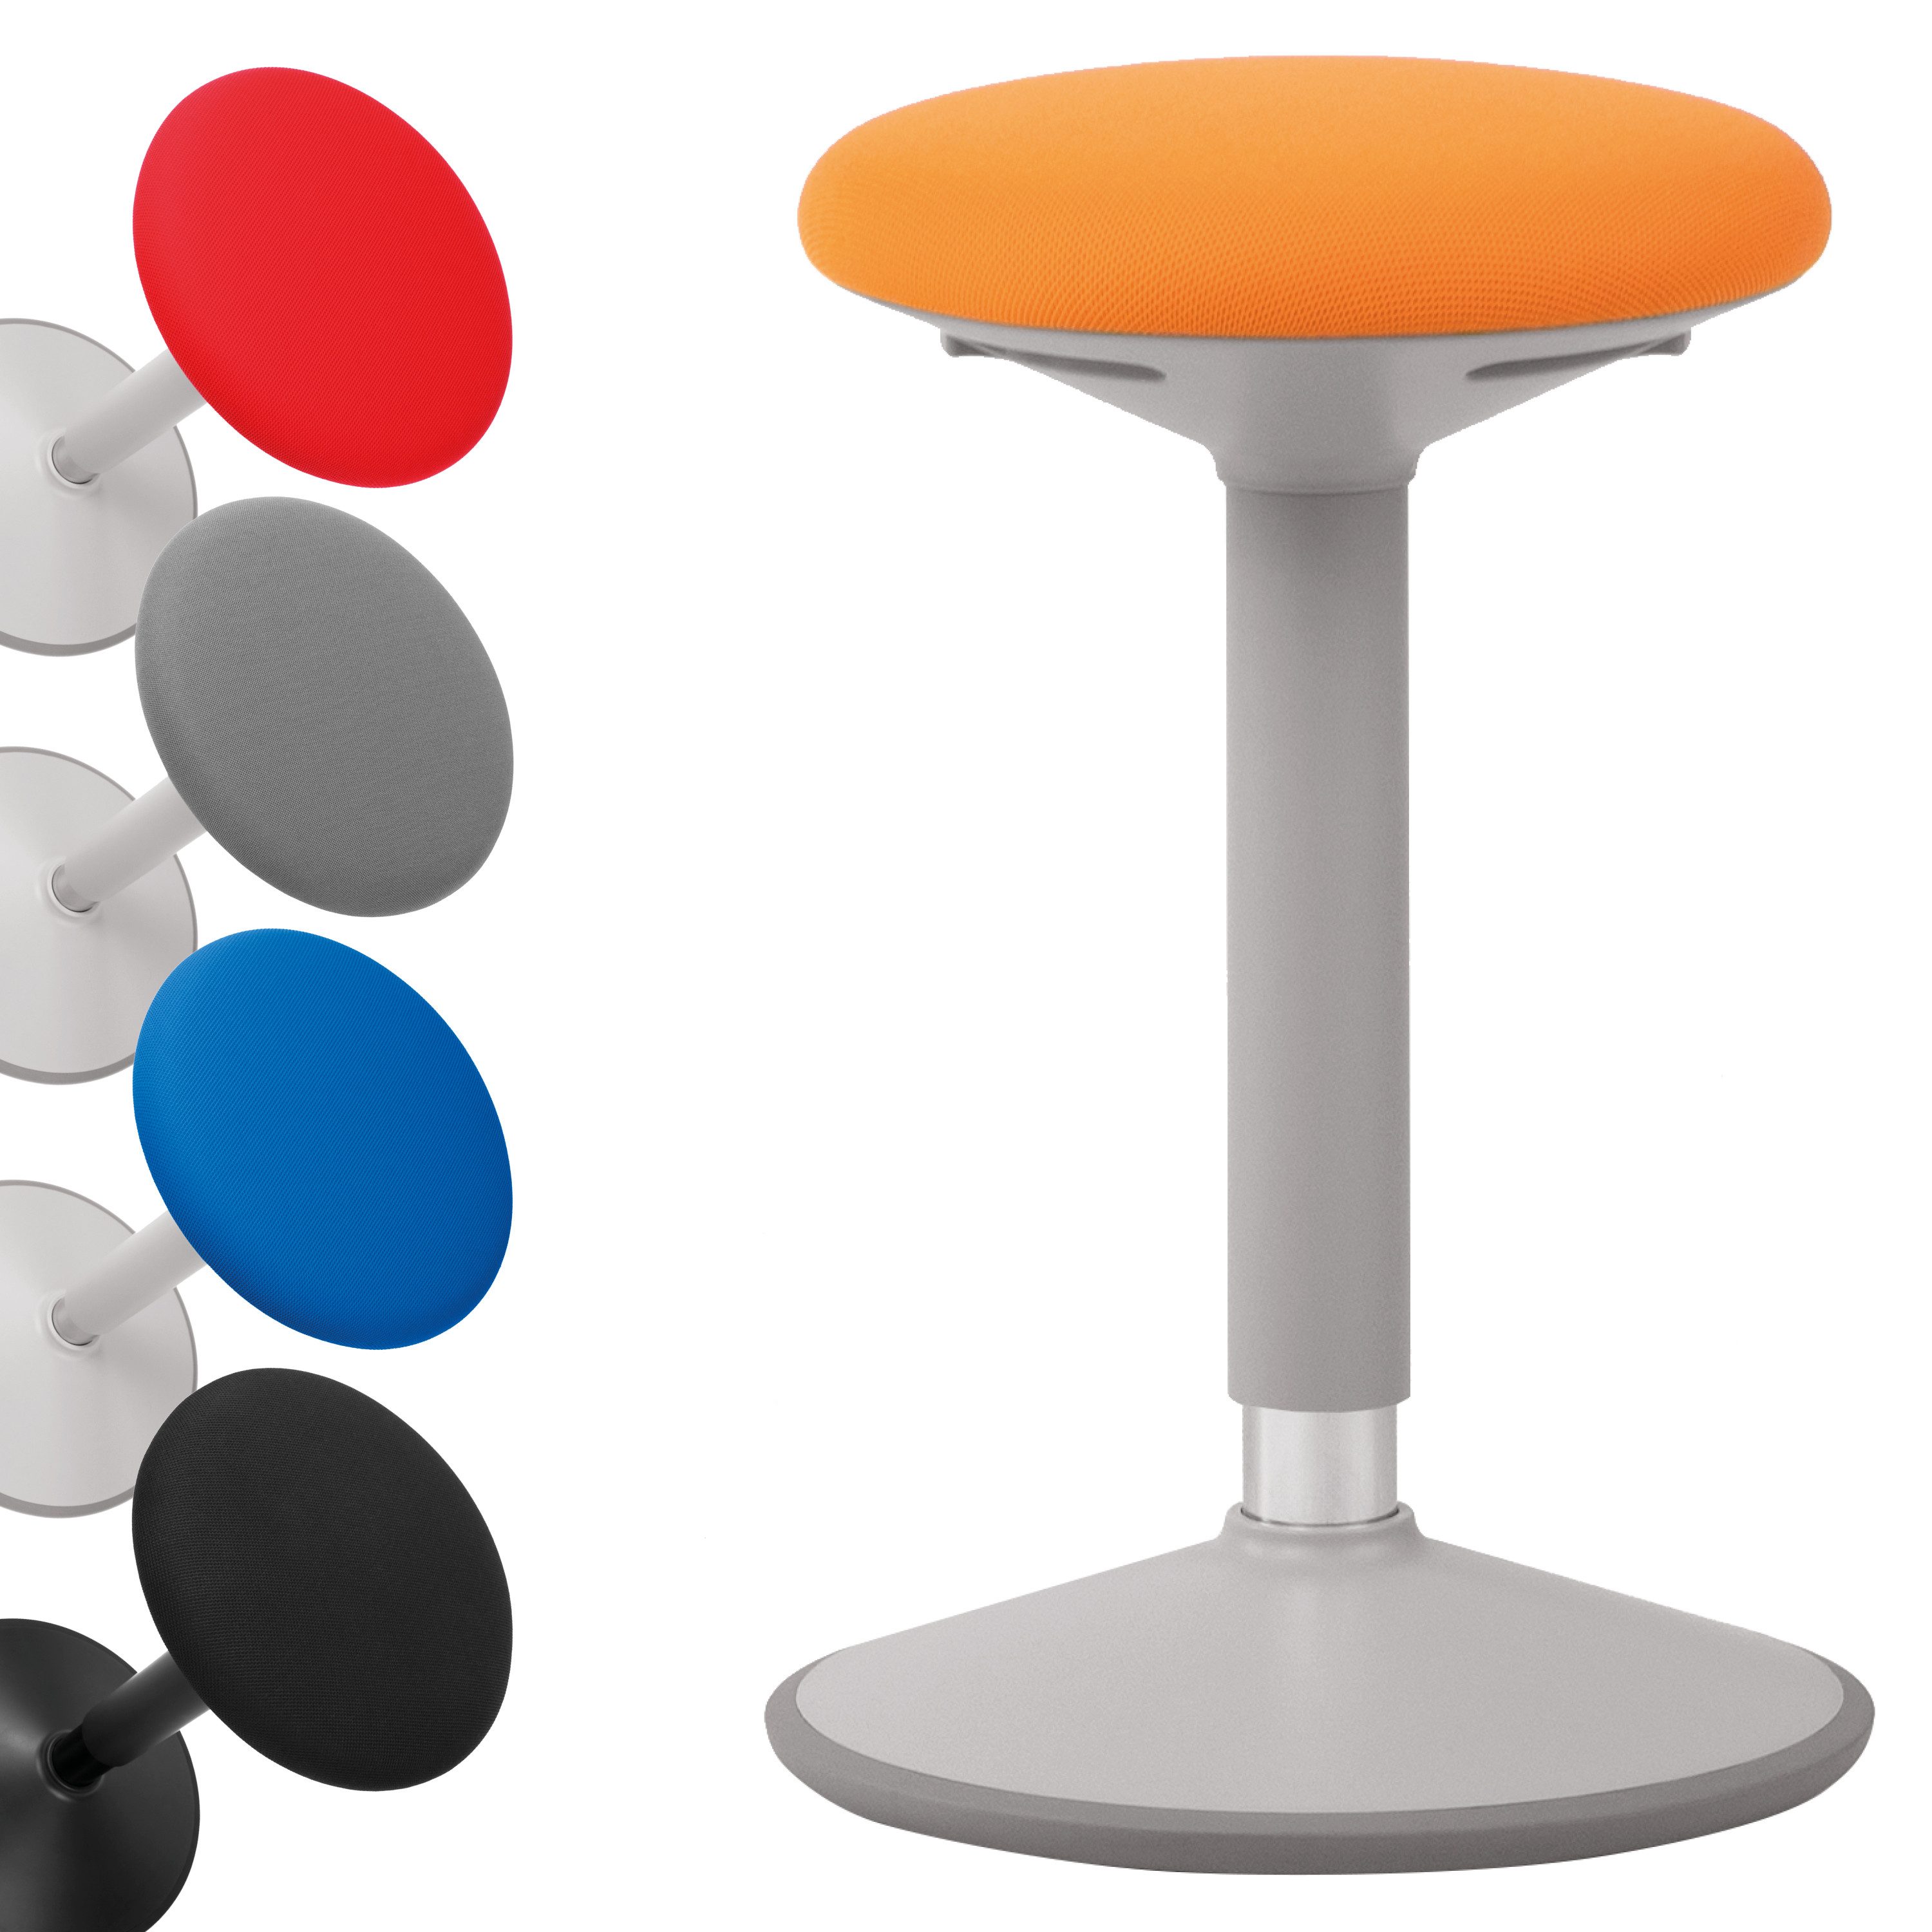 boho office® Stehhilfe, ergonomische Sitzhilfe in Orange-Grau, höhenverstellbar von 56-81 cm